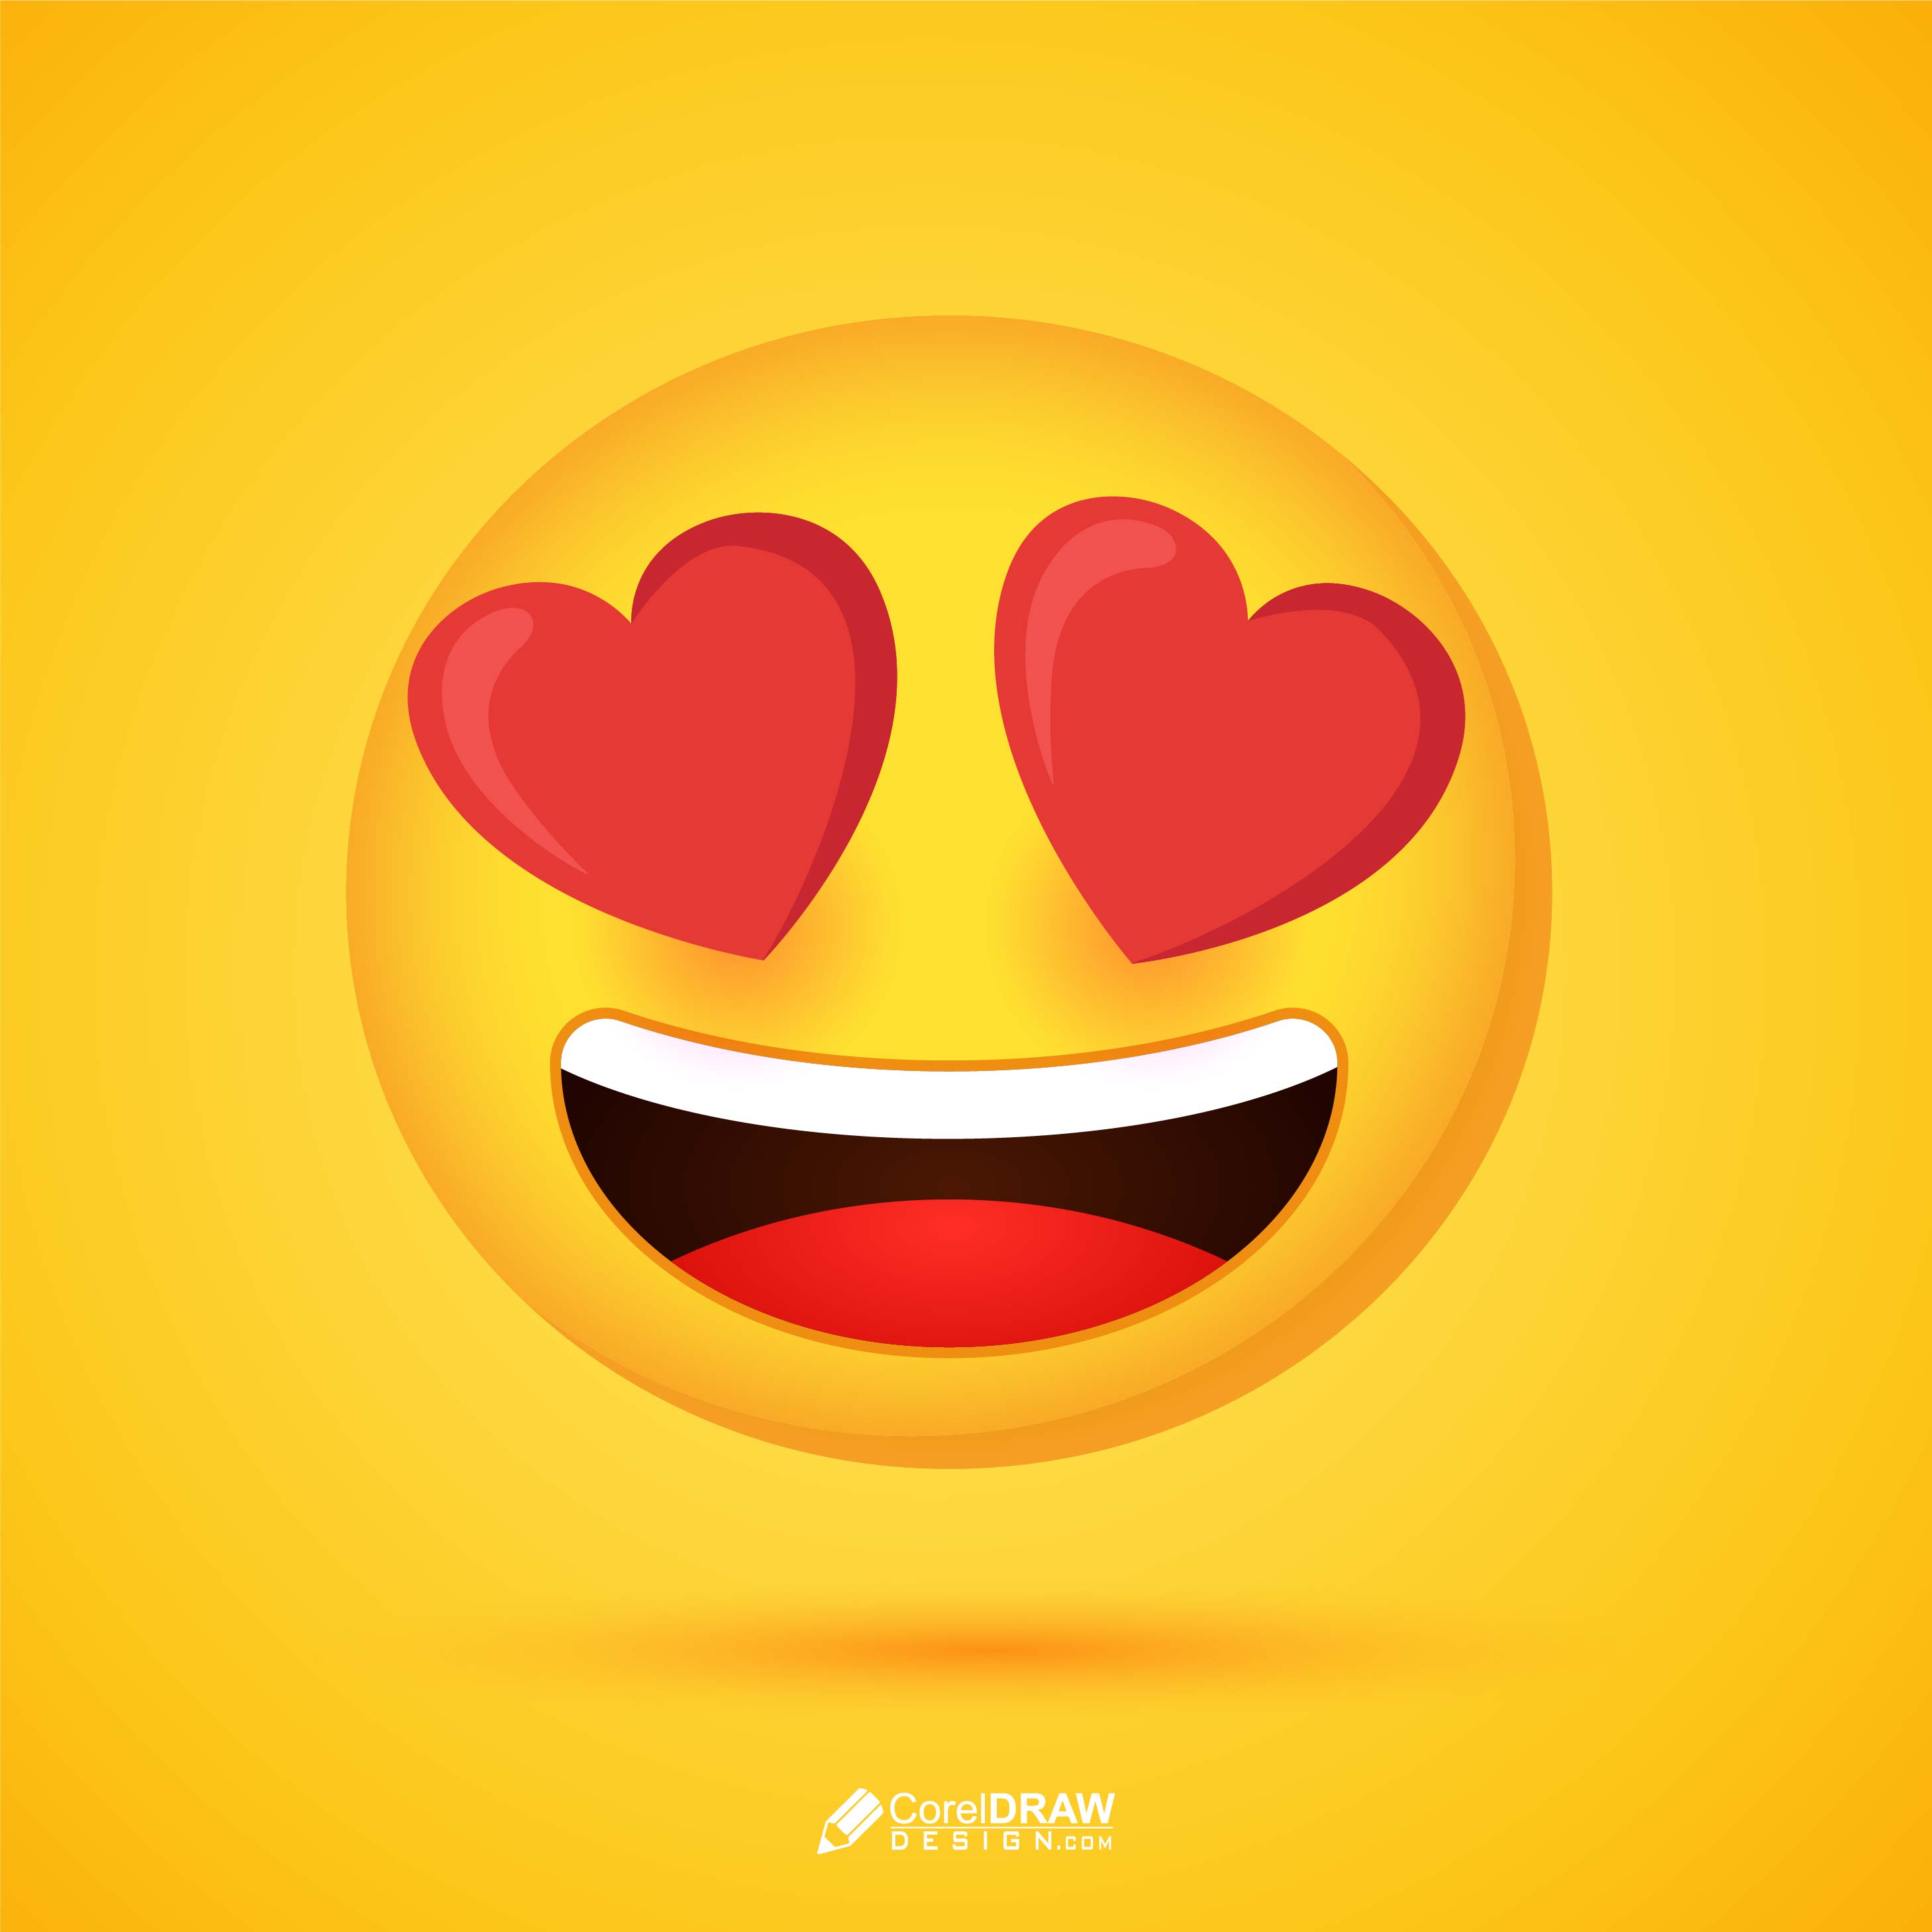 Download 3D Funny Love Emoji Vector | Coreldraw Design (Download Free Cdr,  Vector, Stock Images, Tutorials, Tips & Tricks)